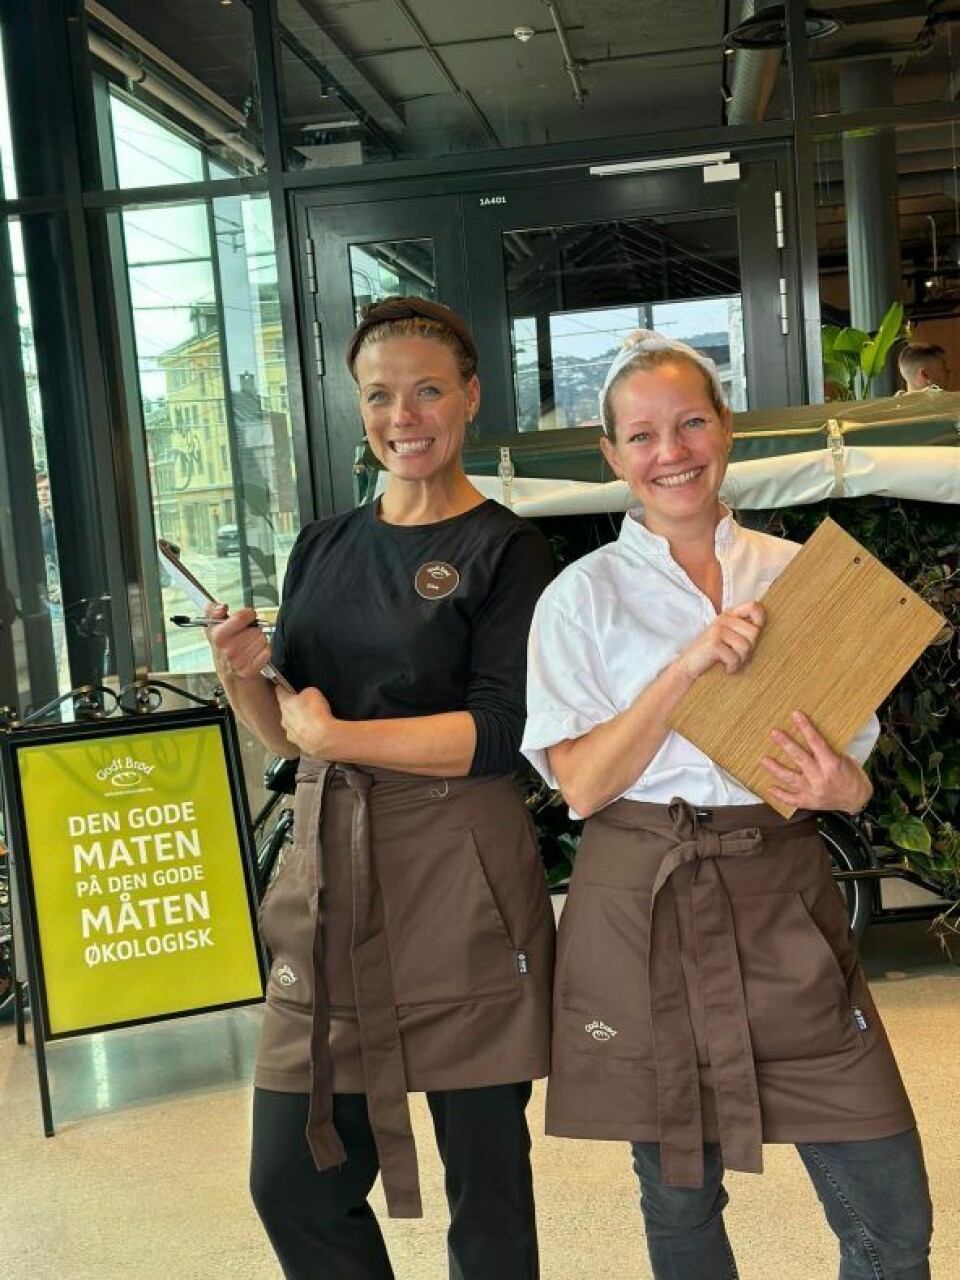 Elise Isager (daglig leder) og Kristin Larsen (markedsjef) i Godt Brlød like før åpning av det nye bakeverkstedet.